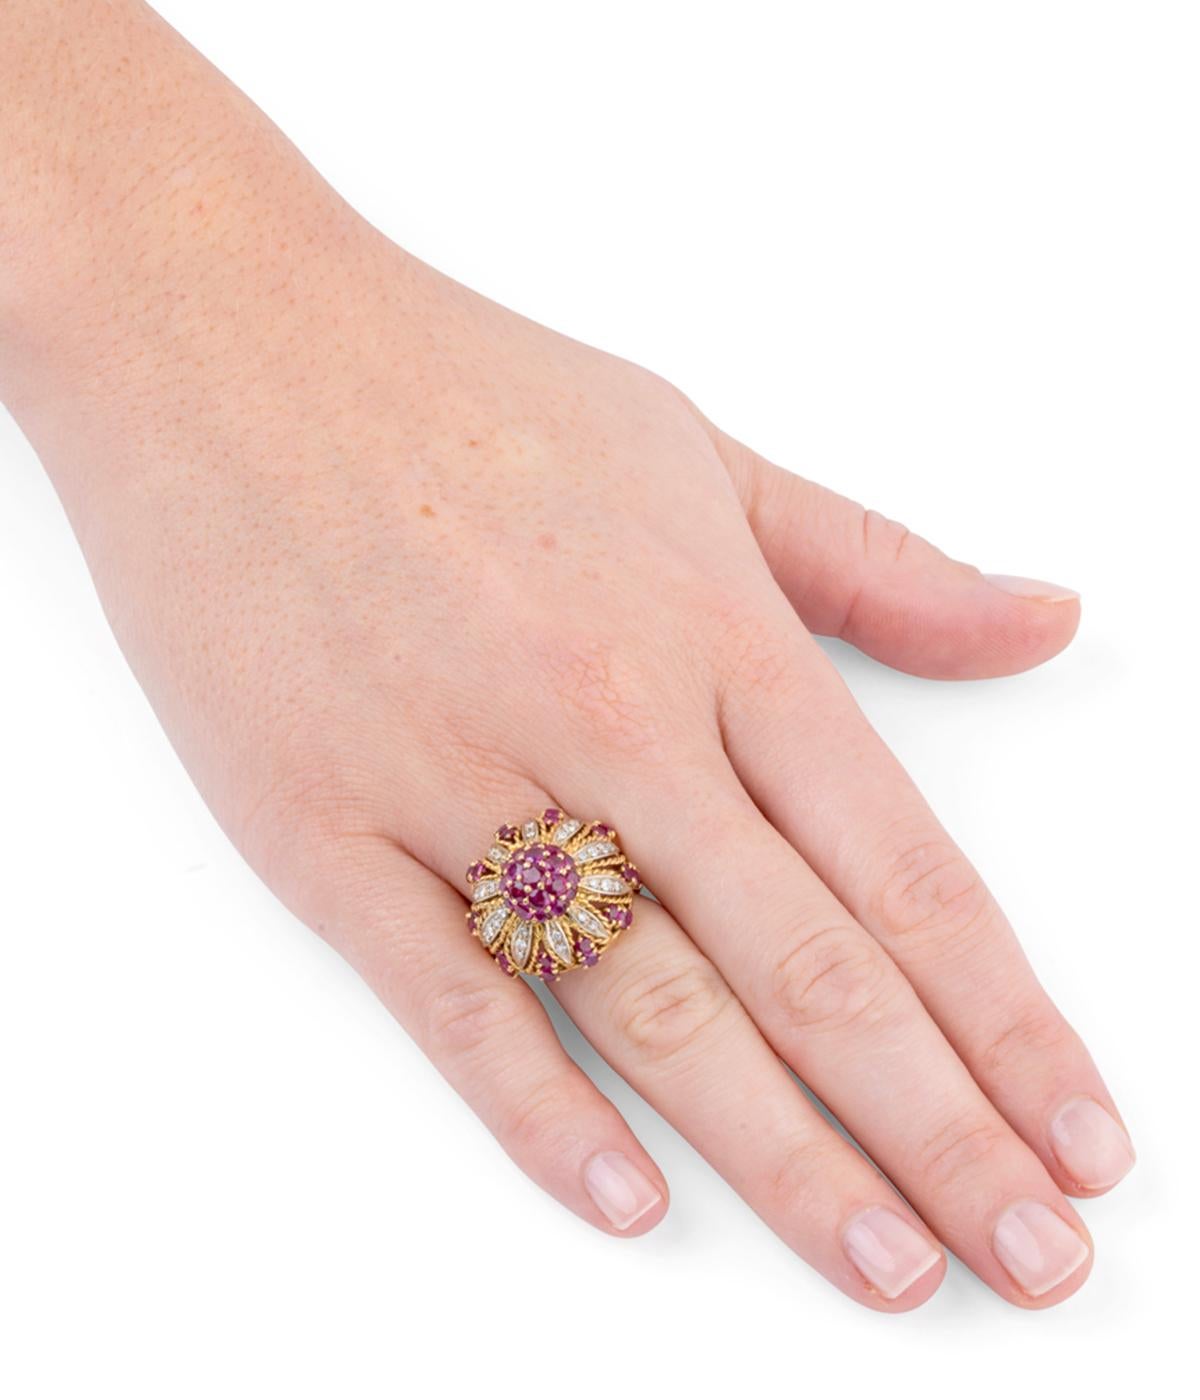 Magnifique bague dôme des années 50. En or 18 carats (750 millièmes), elle représente une fleur dont les pétales sont soulignés de diamants taille 8/8 et le pistil de rubis calibrés.